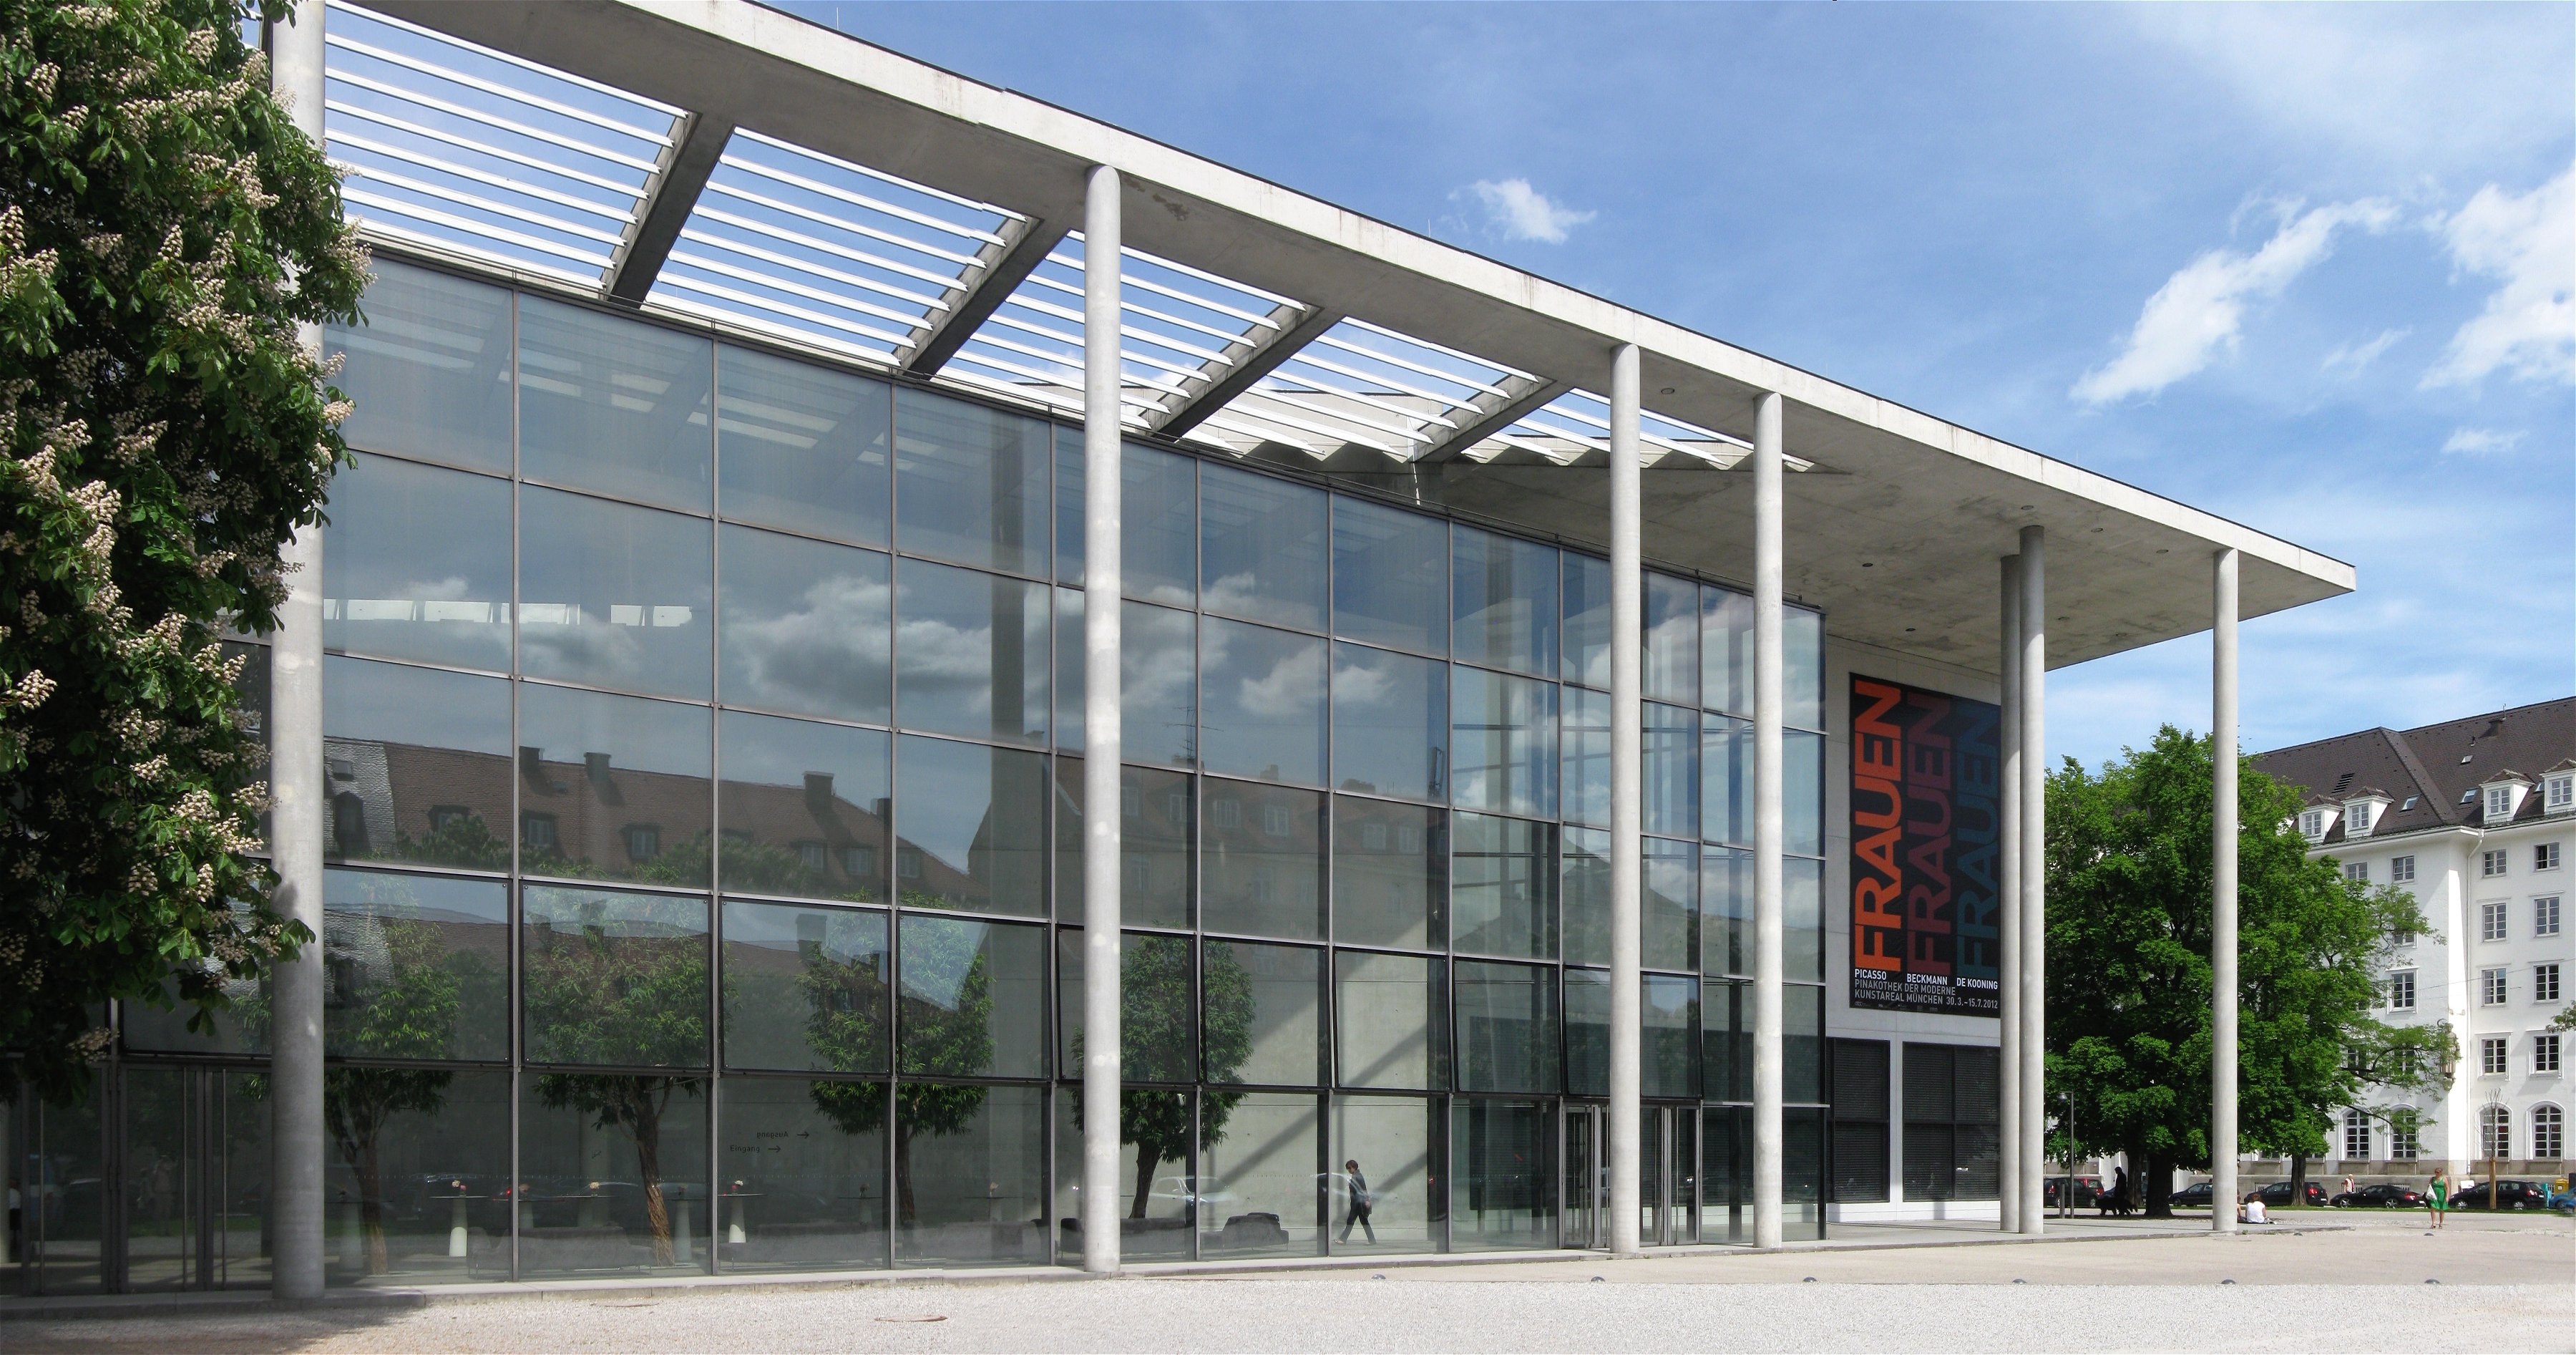 Bảo tàng Pinakothek - Pinakothek der Moderne - Munich - Đức